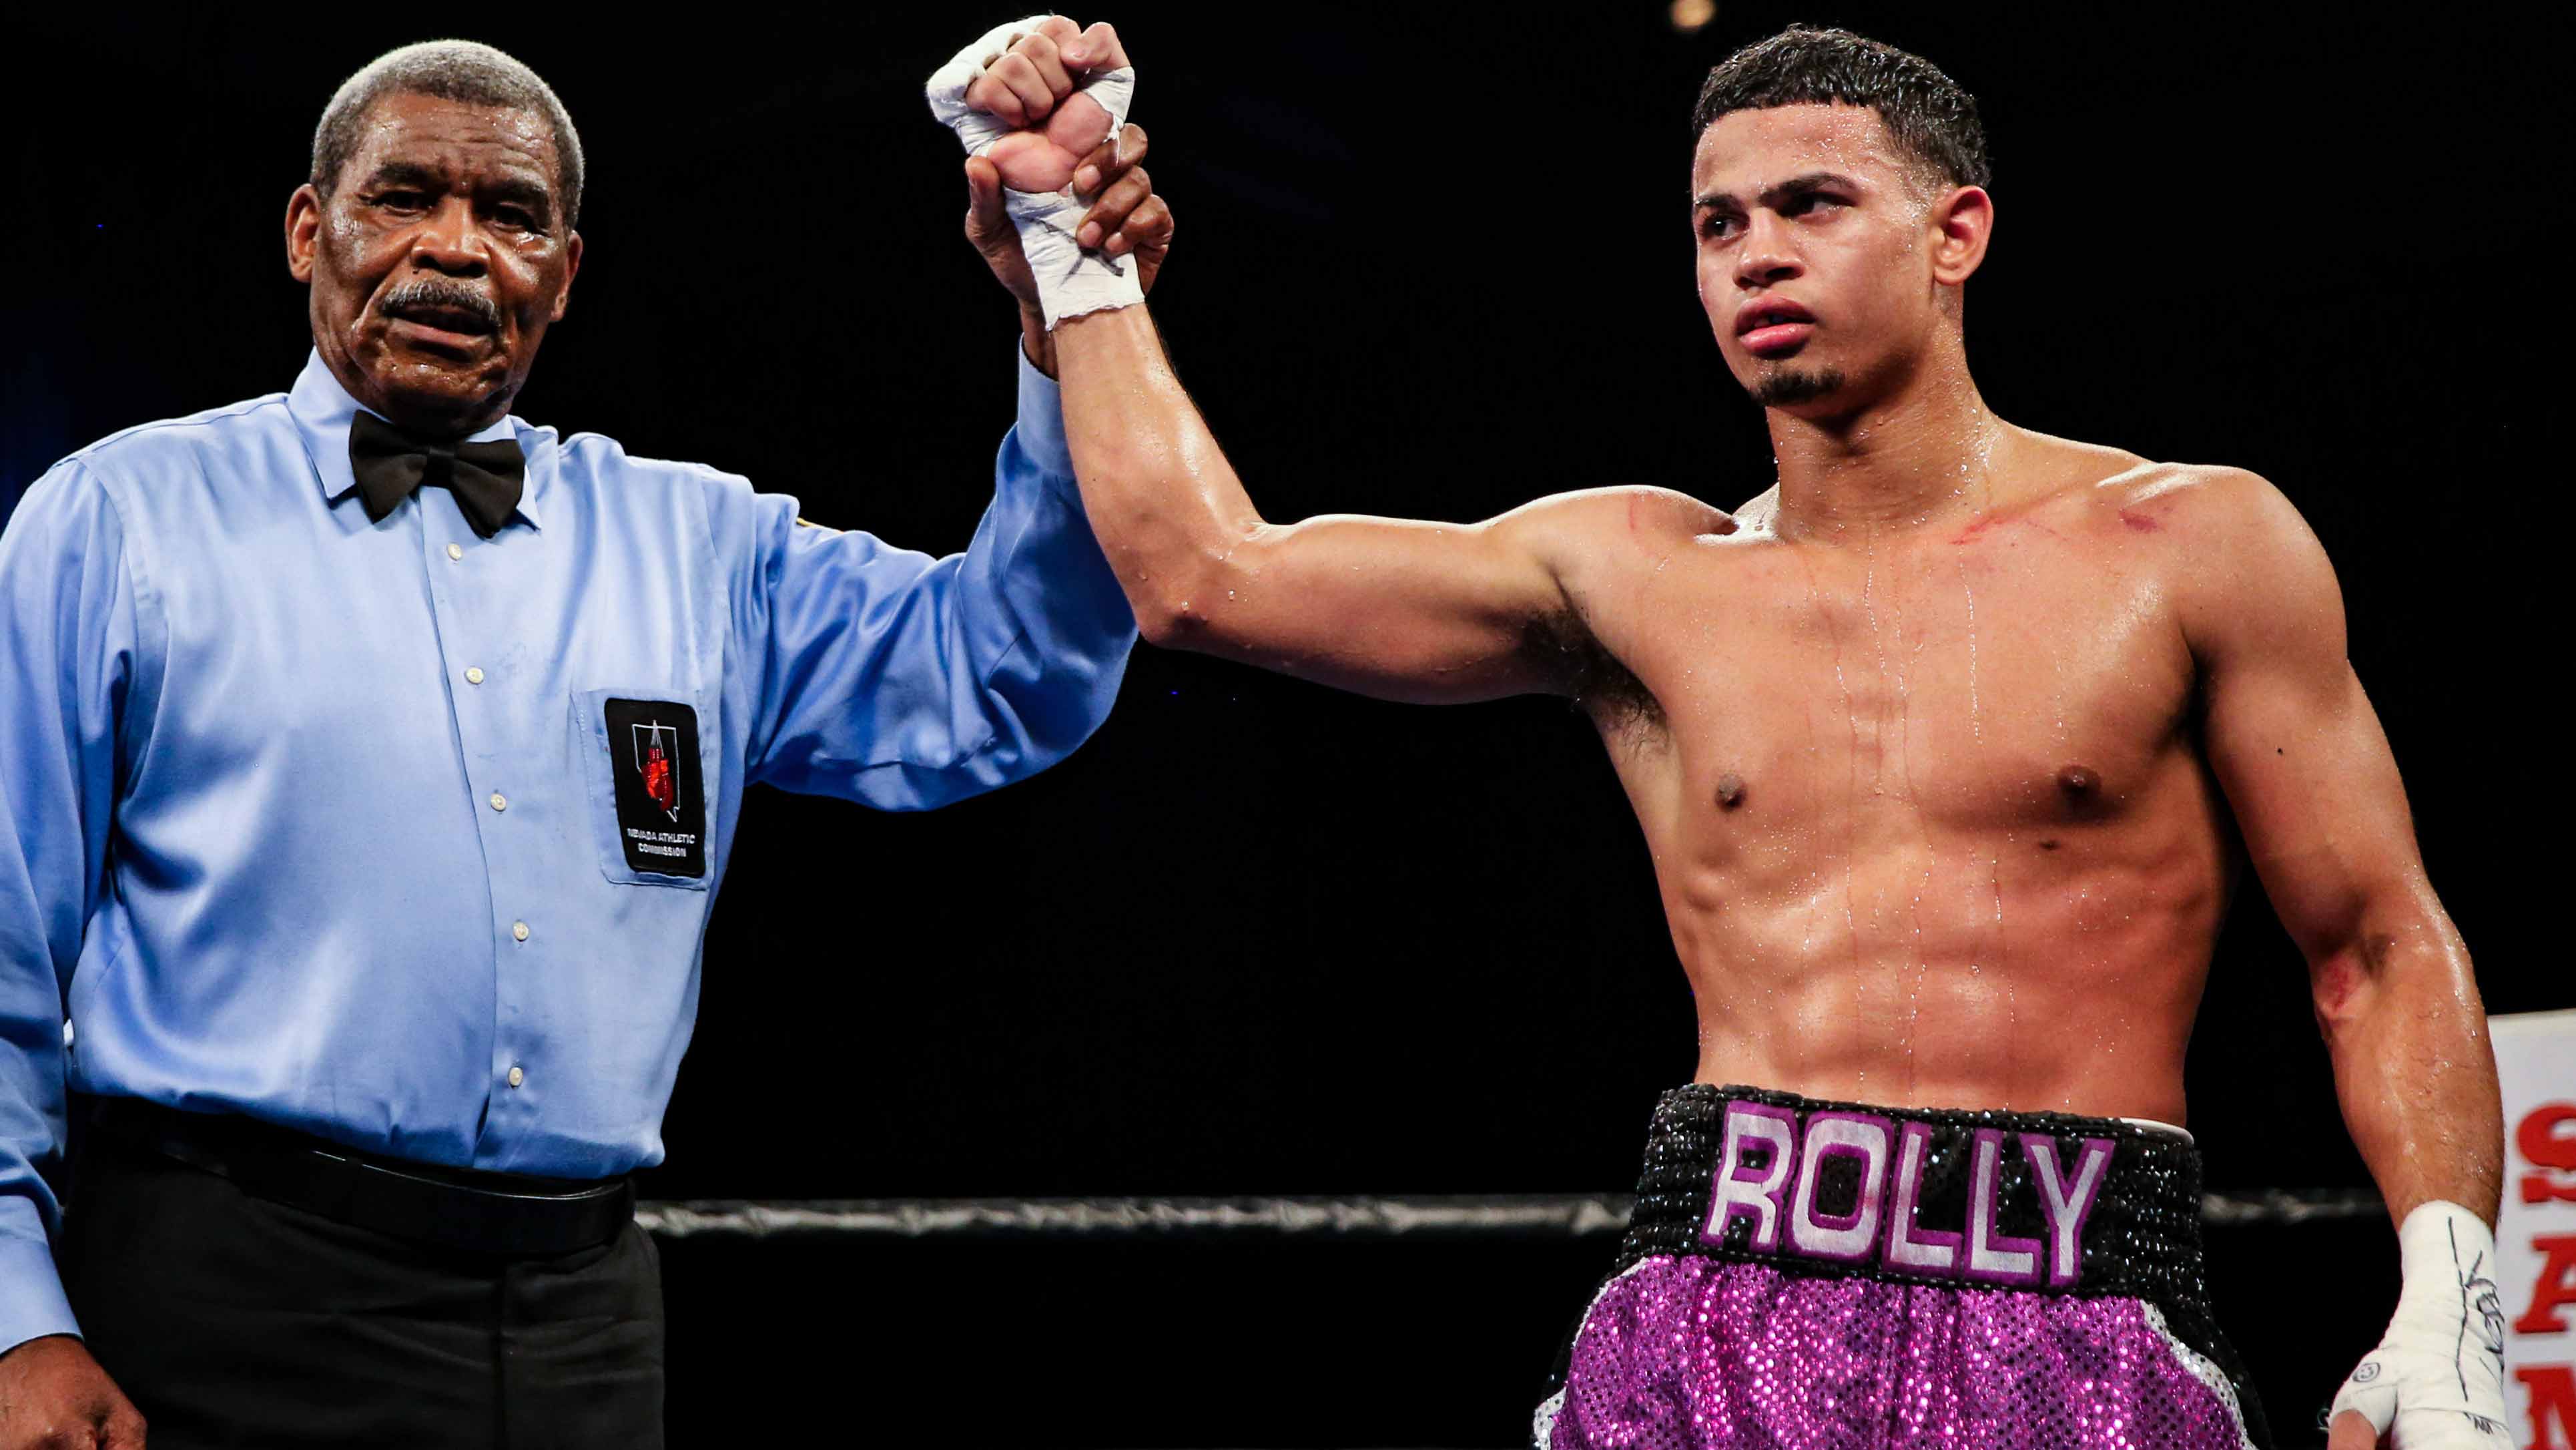 Photo: rolly romero boxing record